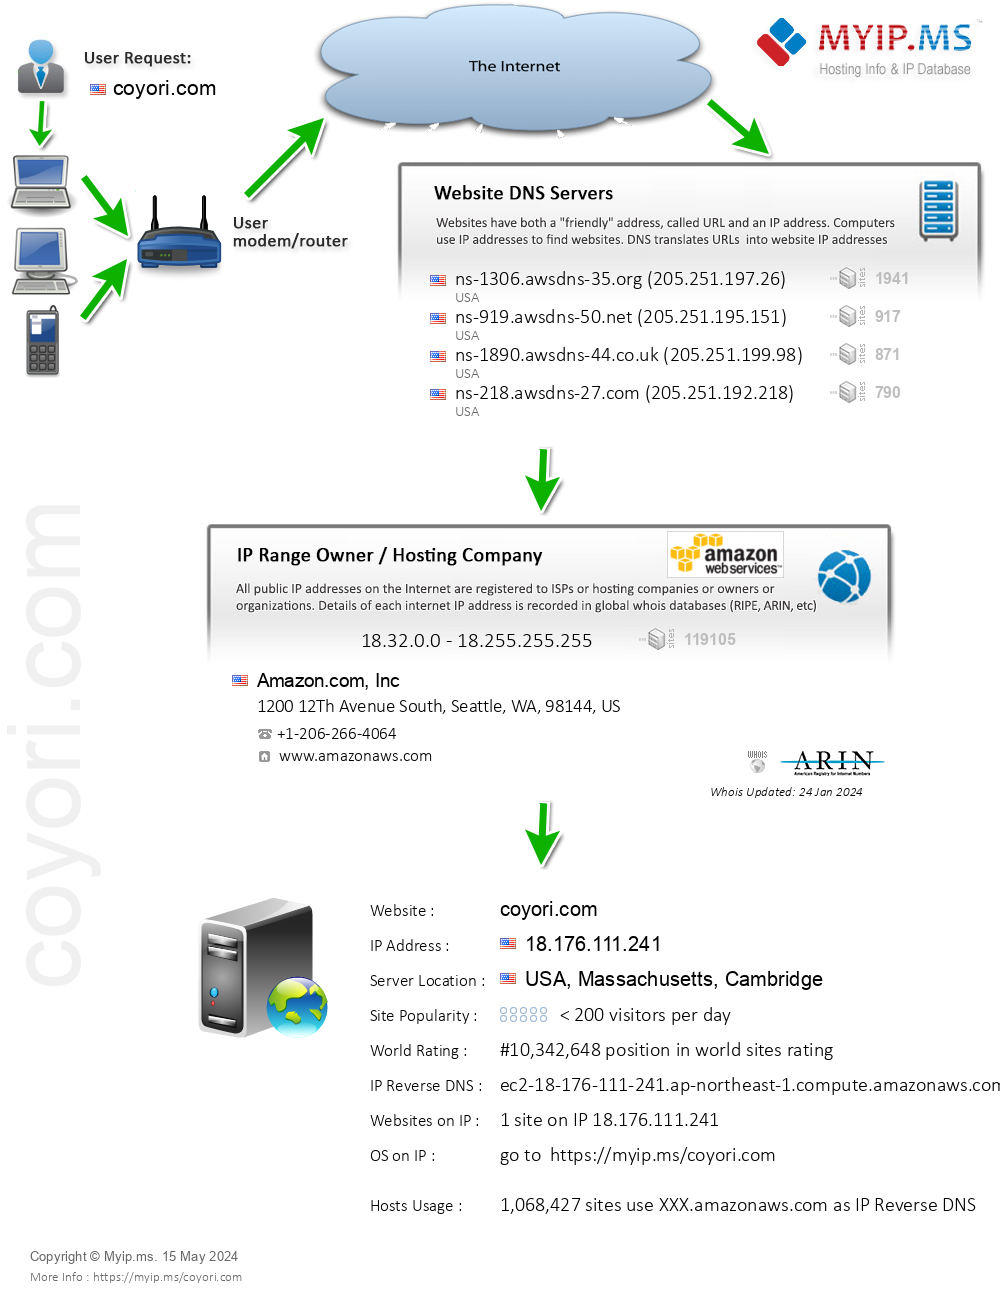 Coyori.com - Website Hosting Visual IP Diagram